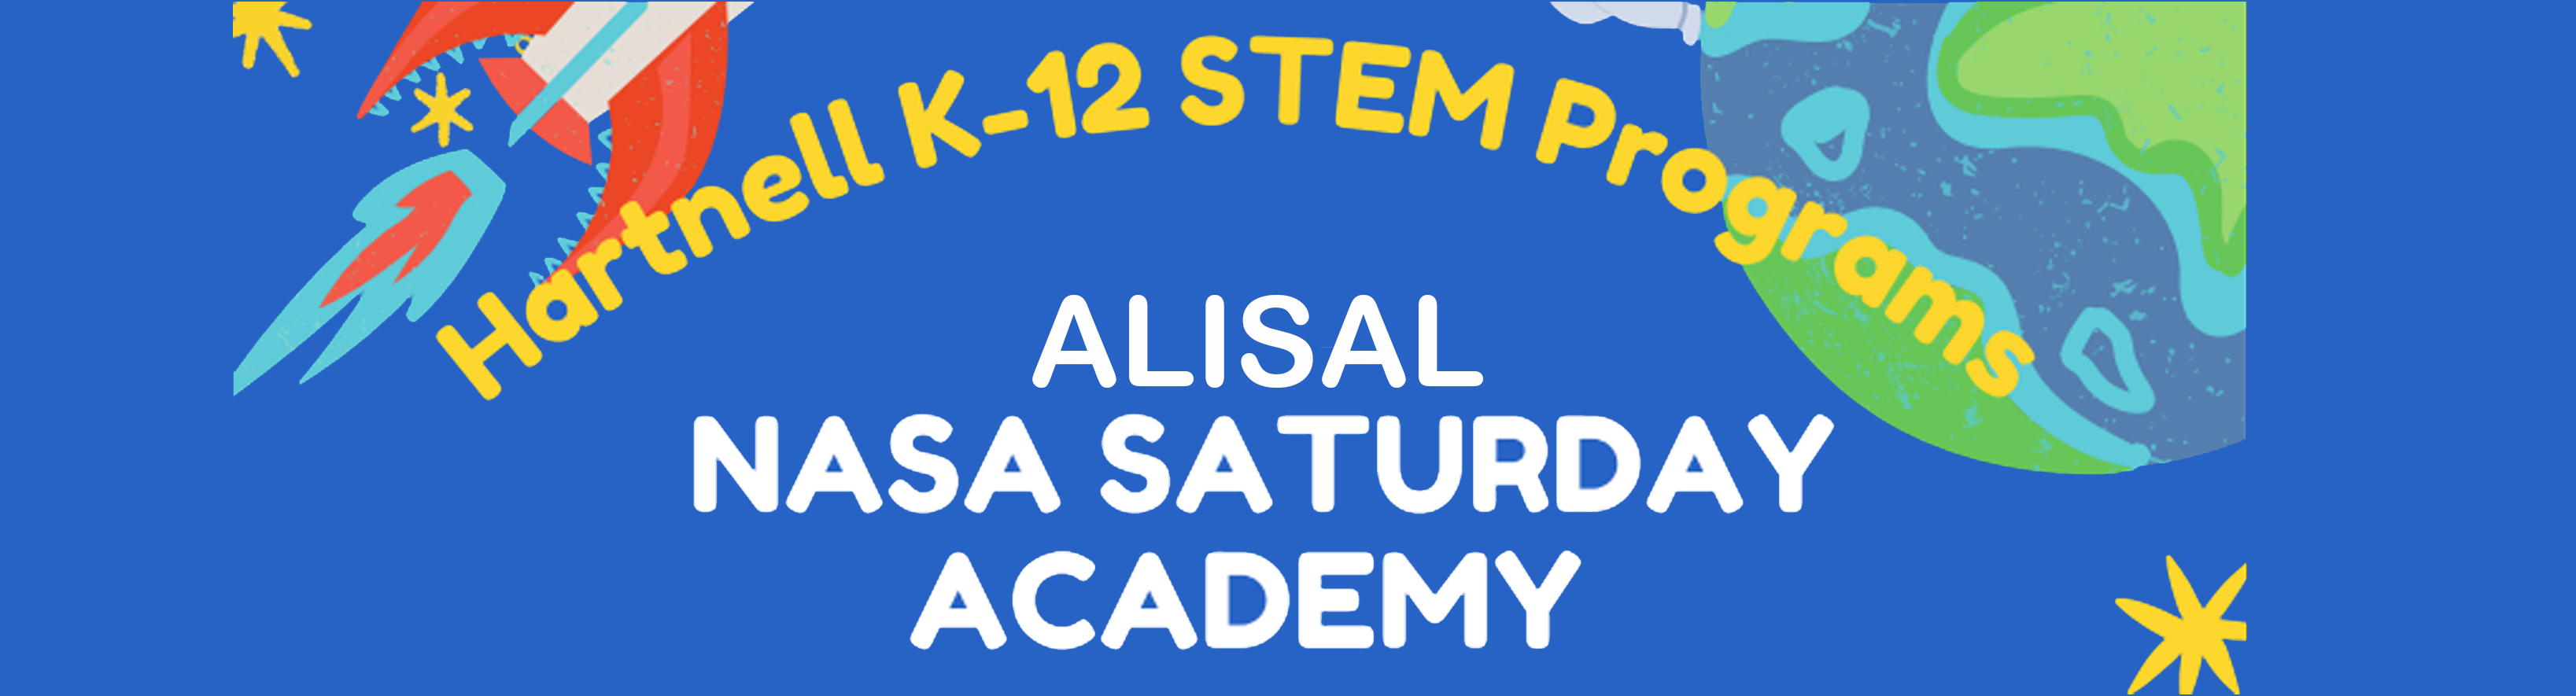 NASA Academy